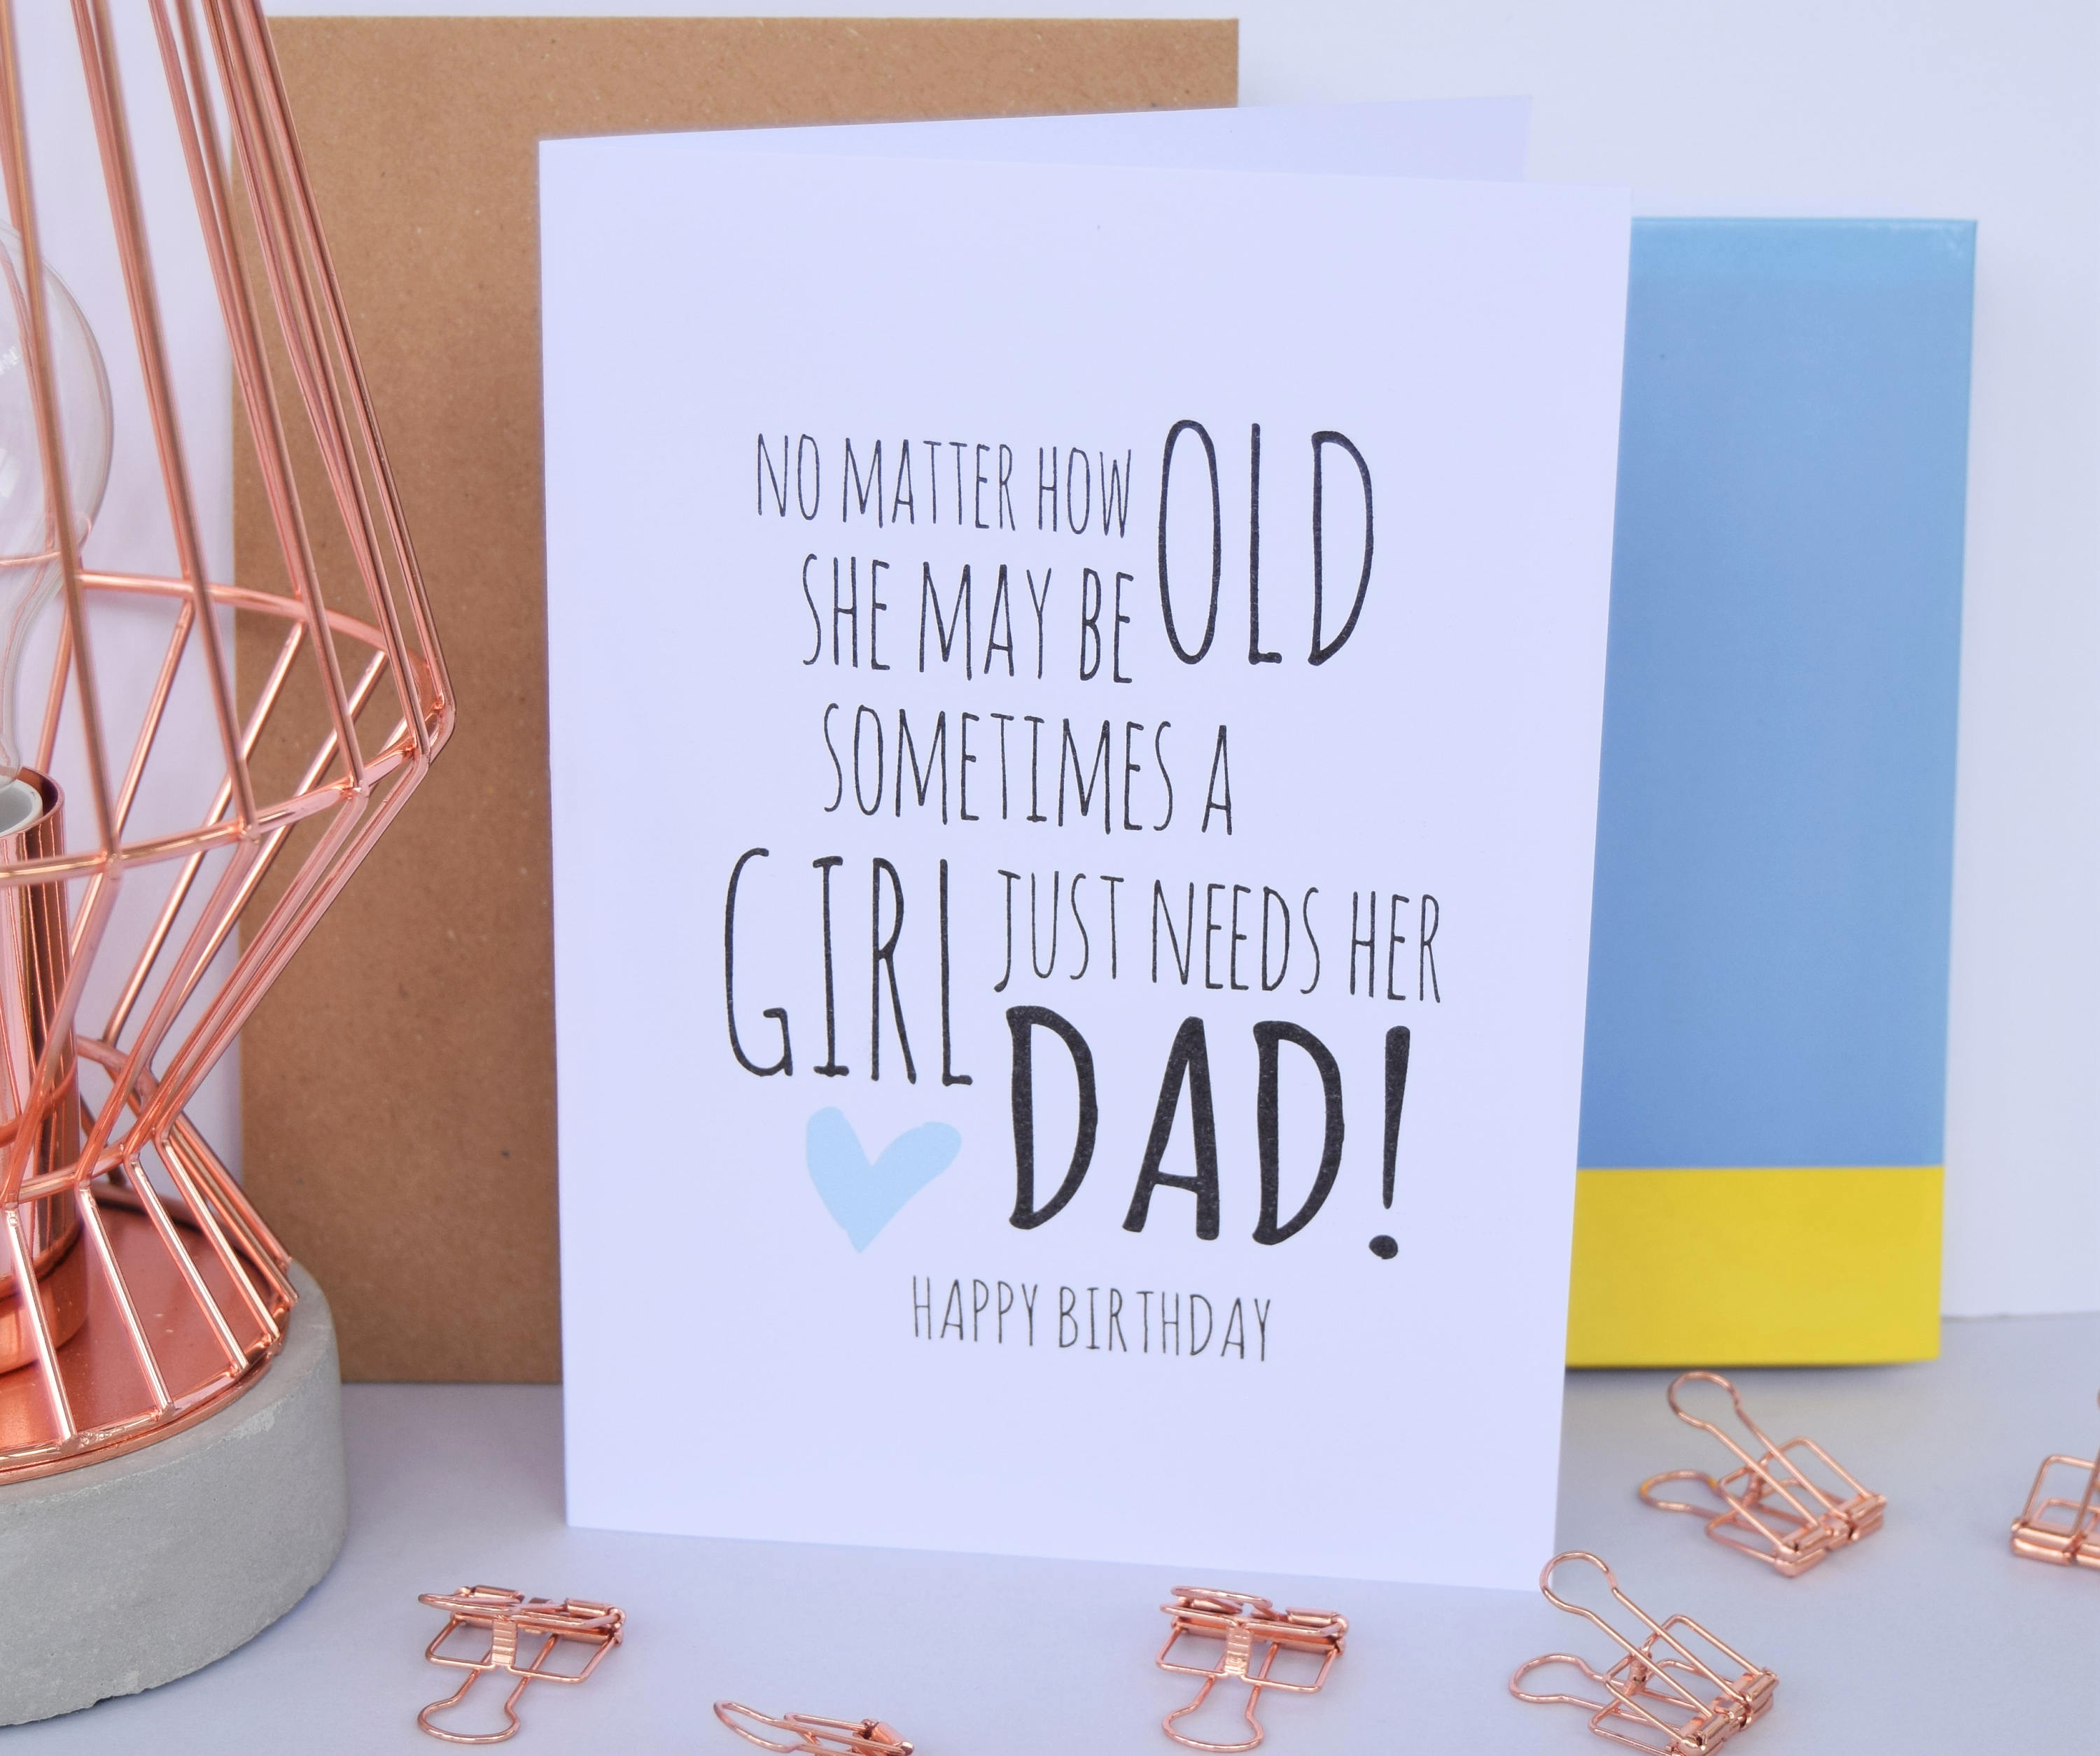 Happy Birthday Dad Card Ideas 98 Good Birthday Card Ideas For Dad Good Birthday Cards For Dad